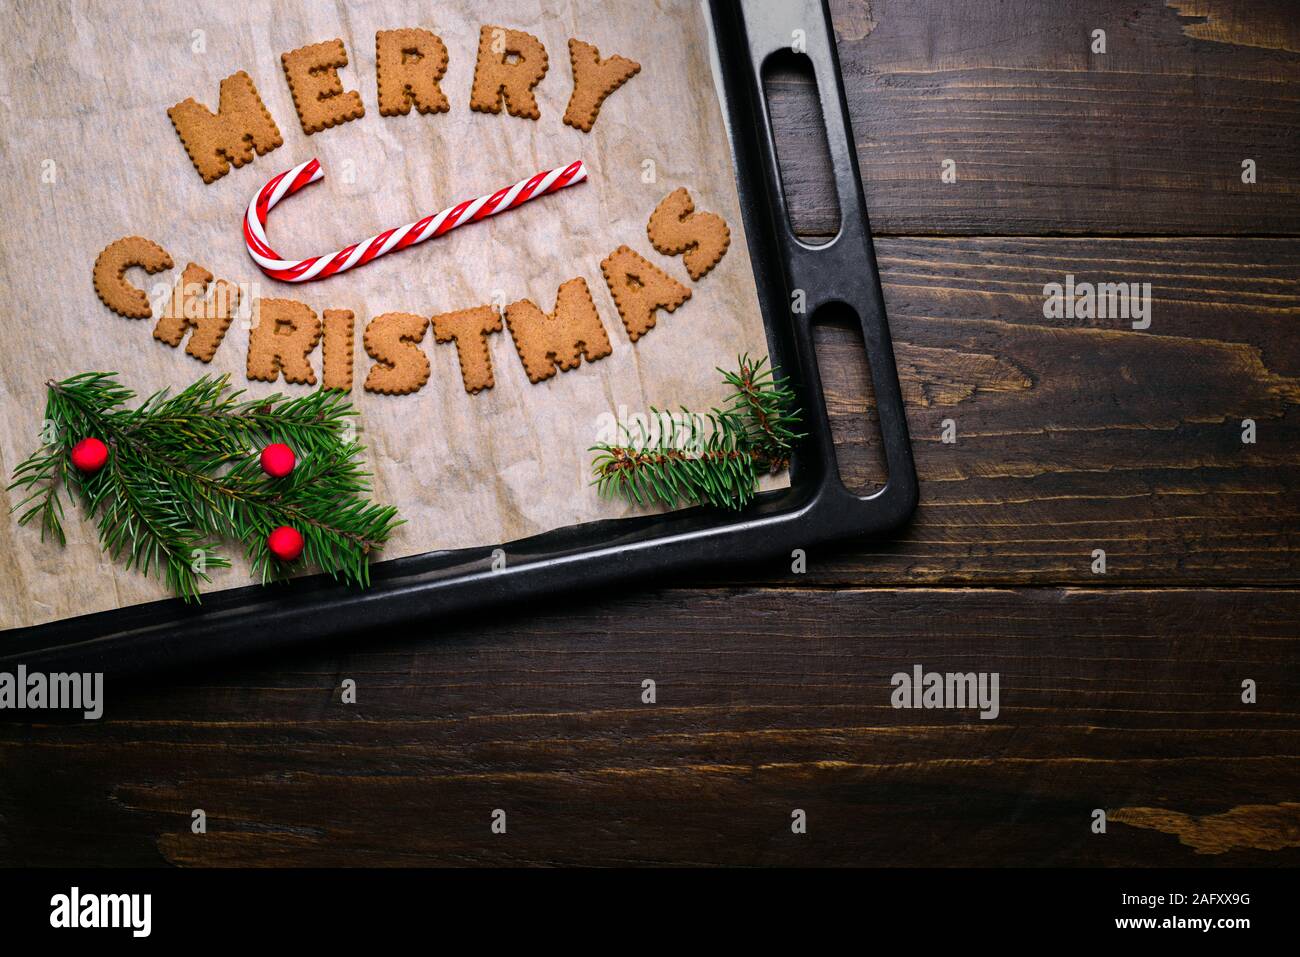 Wörter Frohe Weihnachten aus Cookies auf backblech Holztisch und Dekorationen Stockfoto